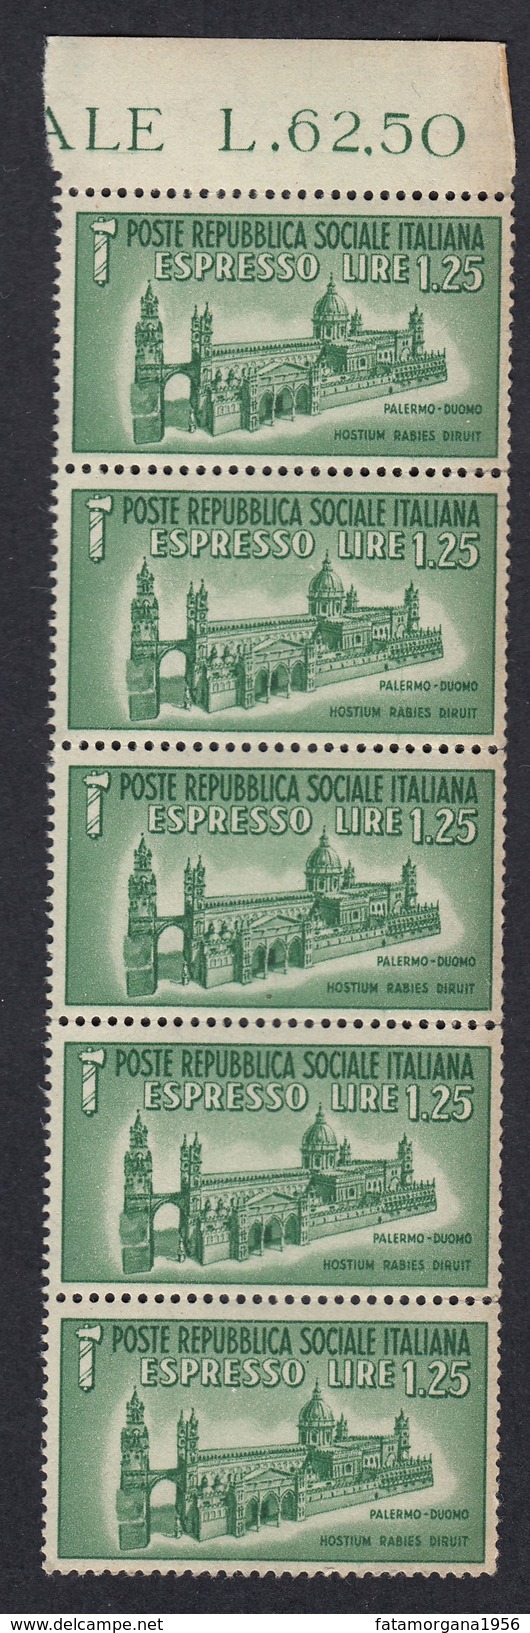 ITALIA - ITALY - Repubblica Sociale - 1944 - Lotto 5 Valori Unificato E23, Nuovi MNH, Uniti Fra Loro. - Posta Espresso